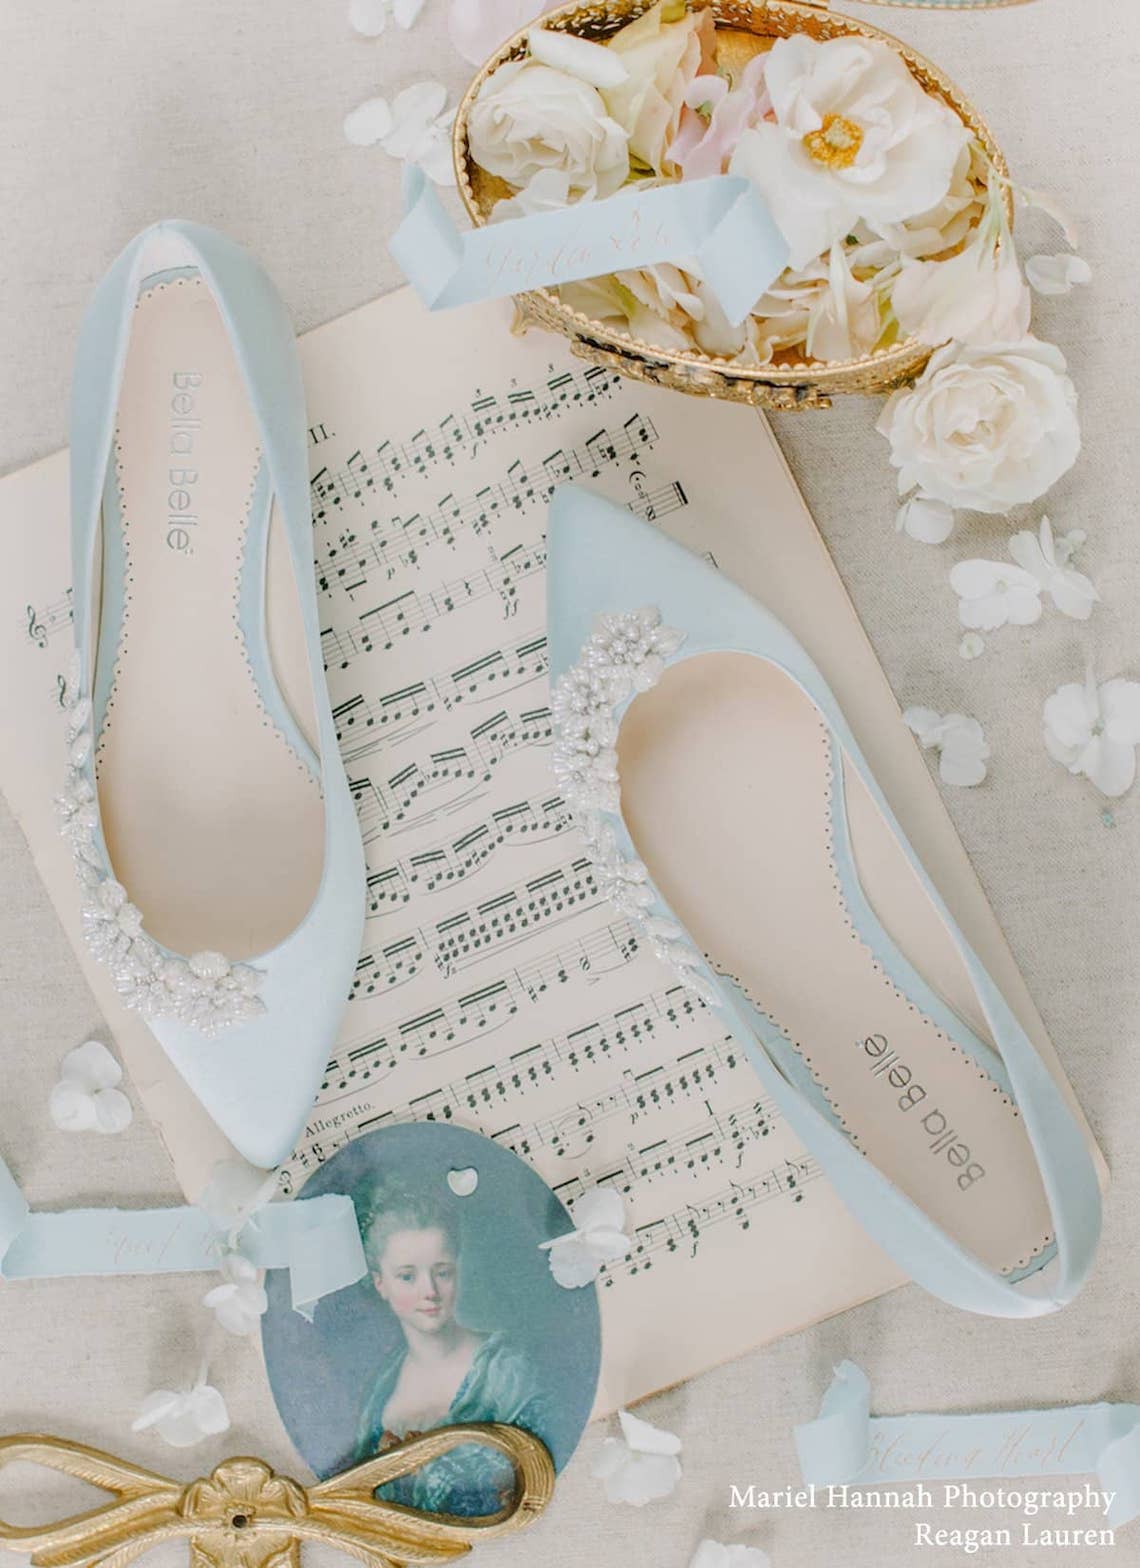 Bella Belle Shoes Daisy Blue Bridal Flats Best Blue Bridal Shoes Heels Booties Sandals Flats for Your Something Blue Wedding Bridal Musings - 22 Đôi giày cô dâu màu xanh lam cho 'Thứ gì đó màu xanh lam' của bạn